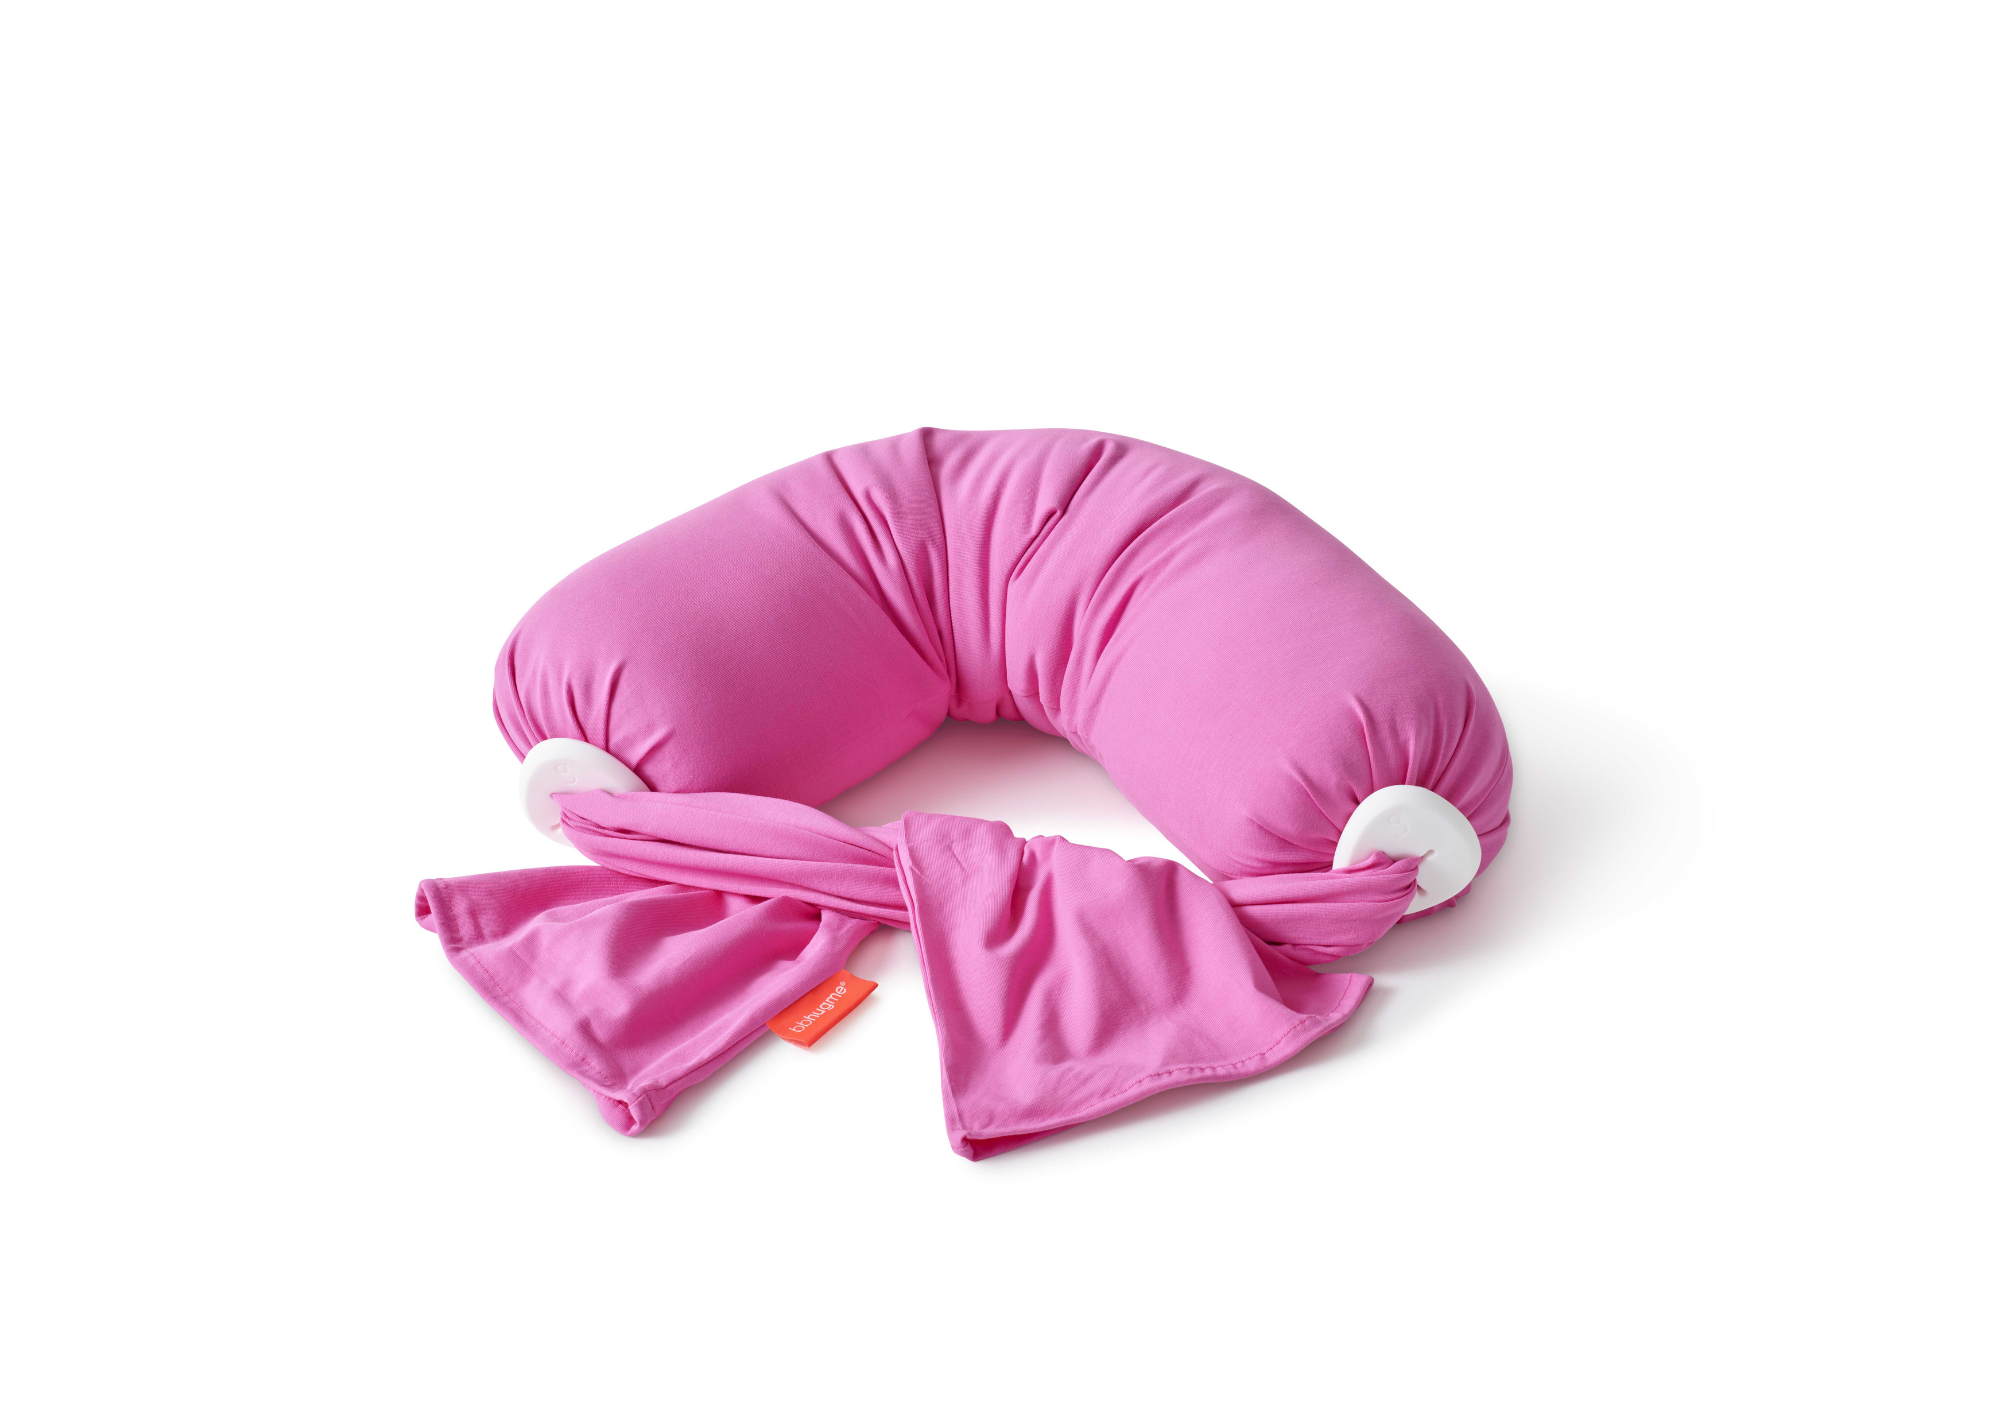 Pink nursing pillow